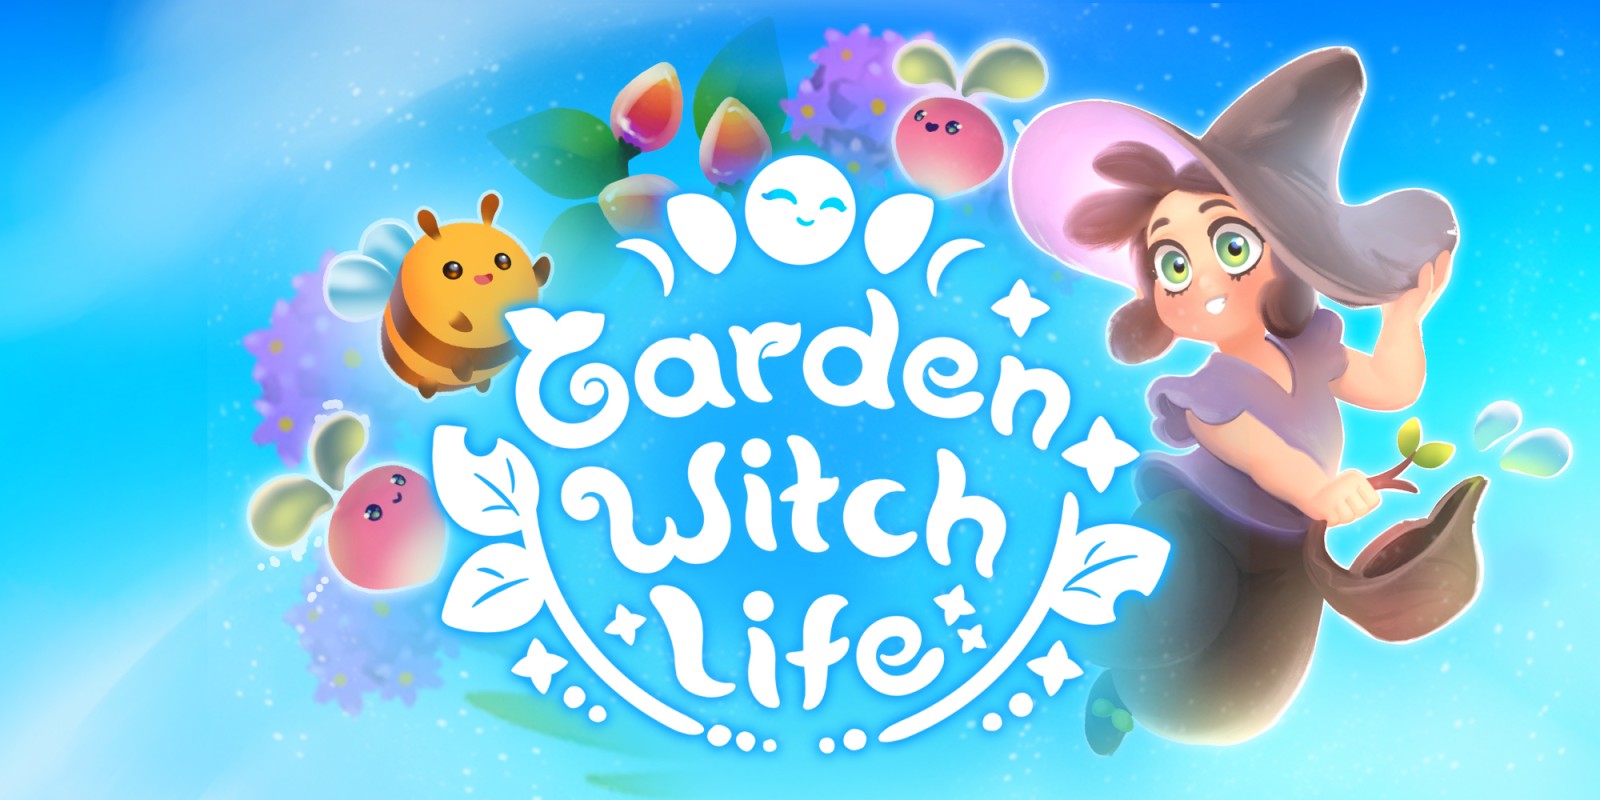 Garden Witch Life